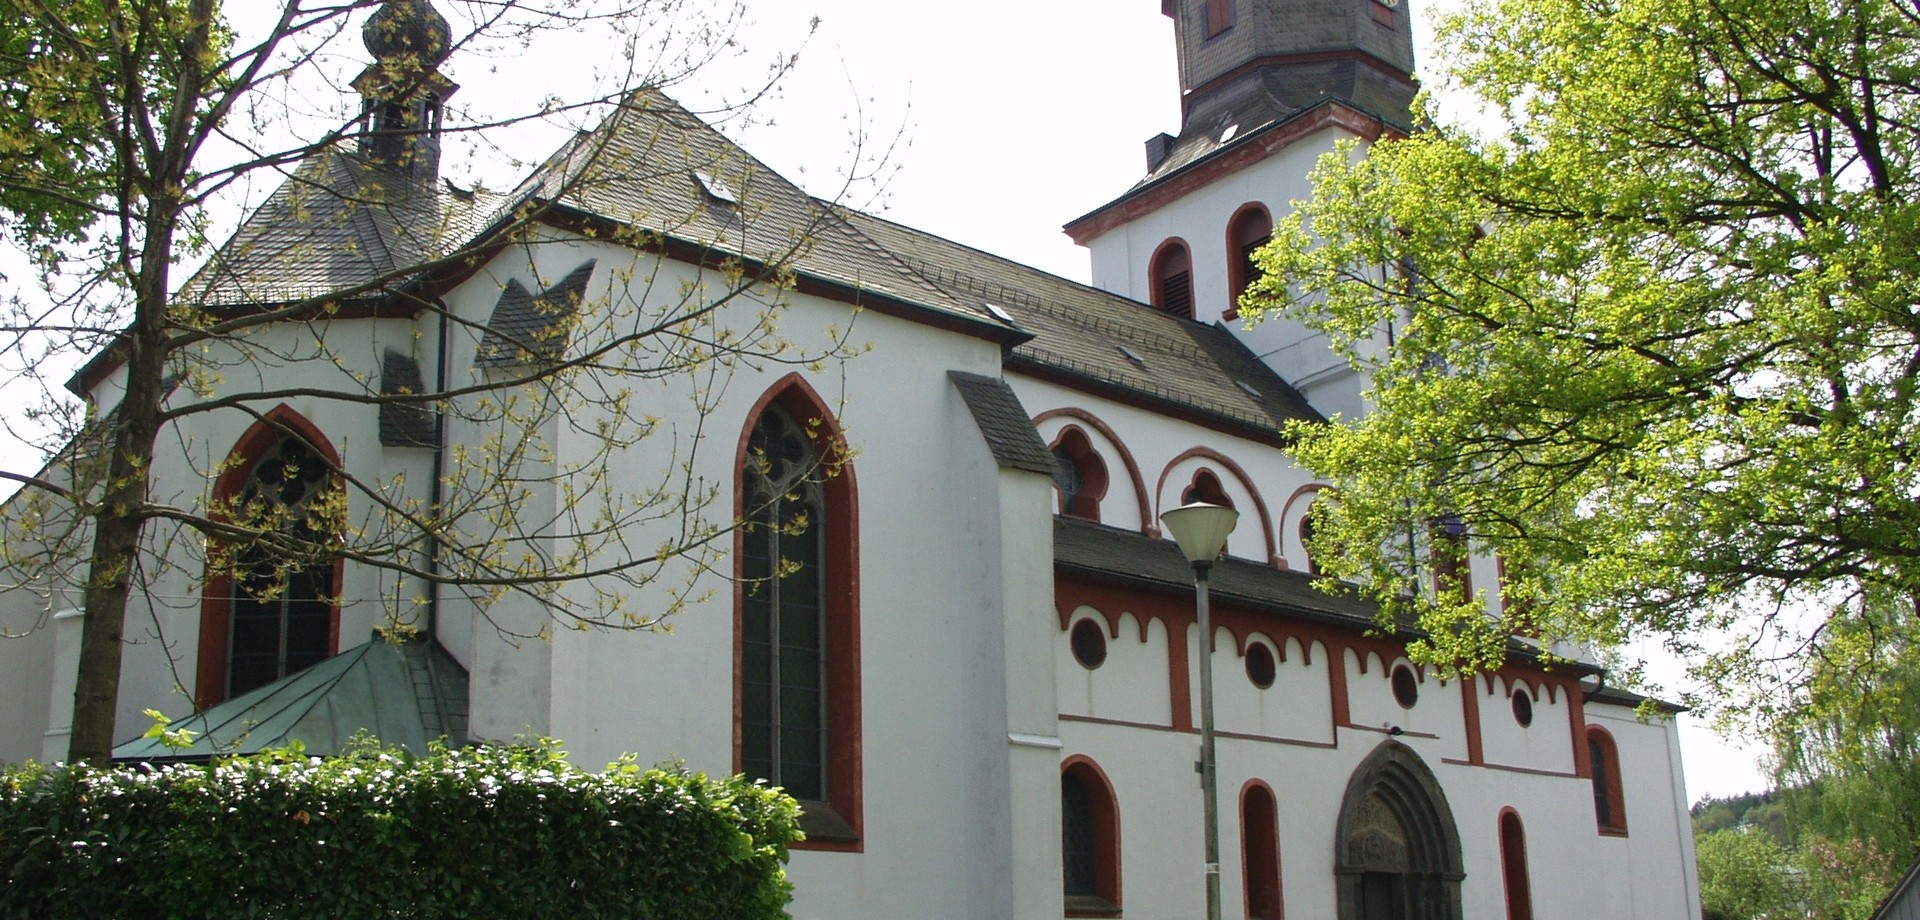 Jesus-Christus-Kirche zu Meinerzhagen (Altertumskommission).